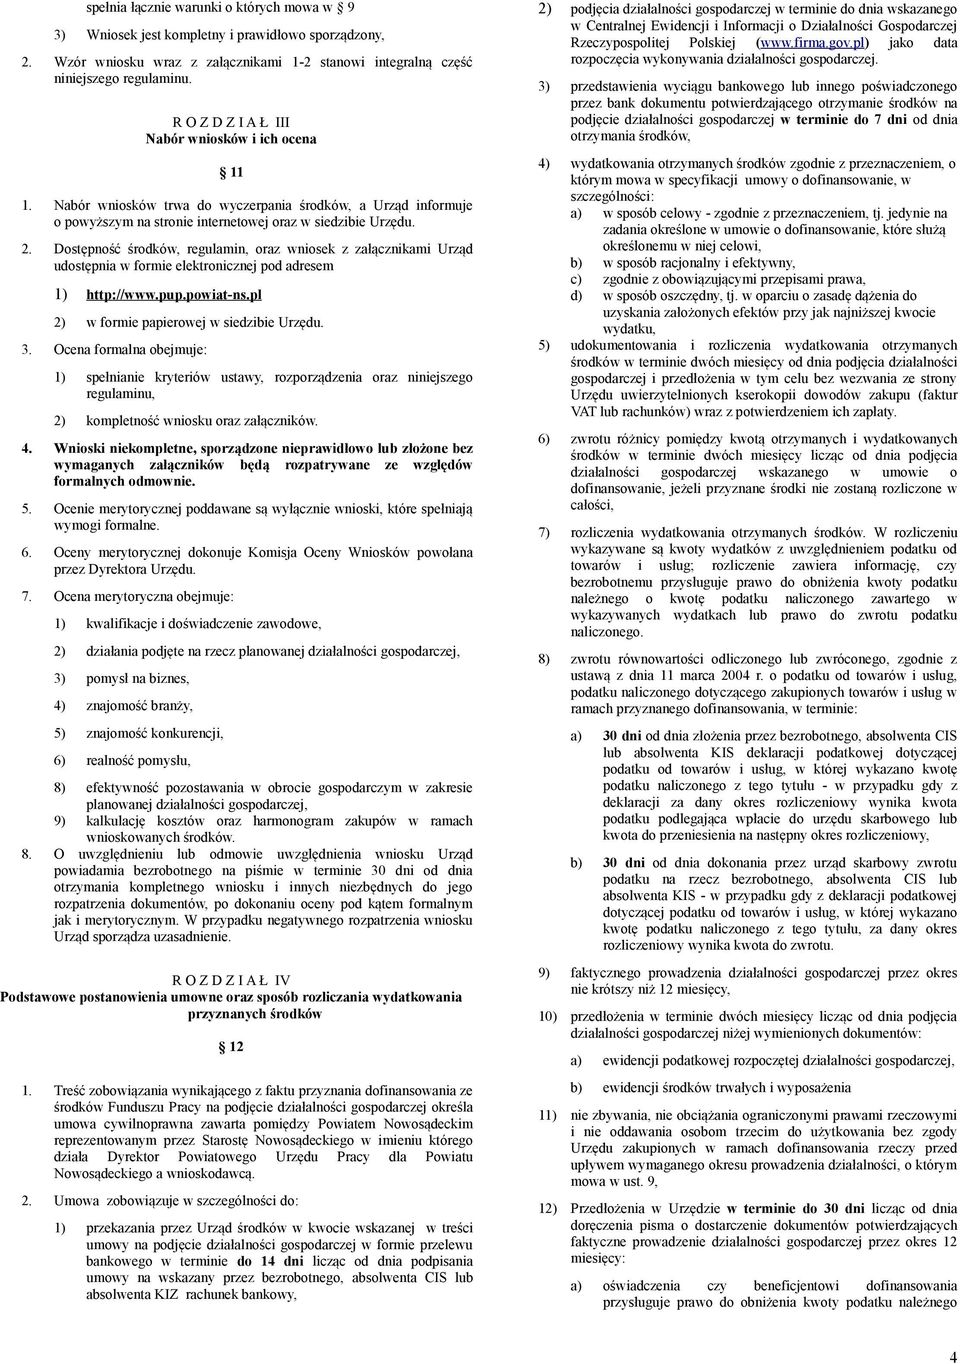 Dostępność środków, regulamin, oraz wniosek z załącznikami Urząd udostępnia w formie elektronicznej pod adresem 1) http://www.pup.powiat-ns.pl 2) w formie papierowej w siedzibie Urzędu. 3.